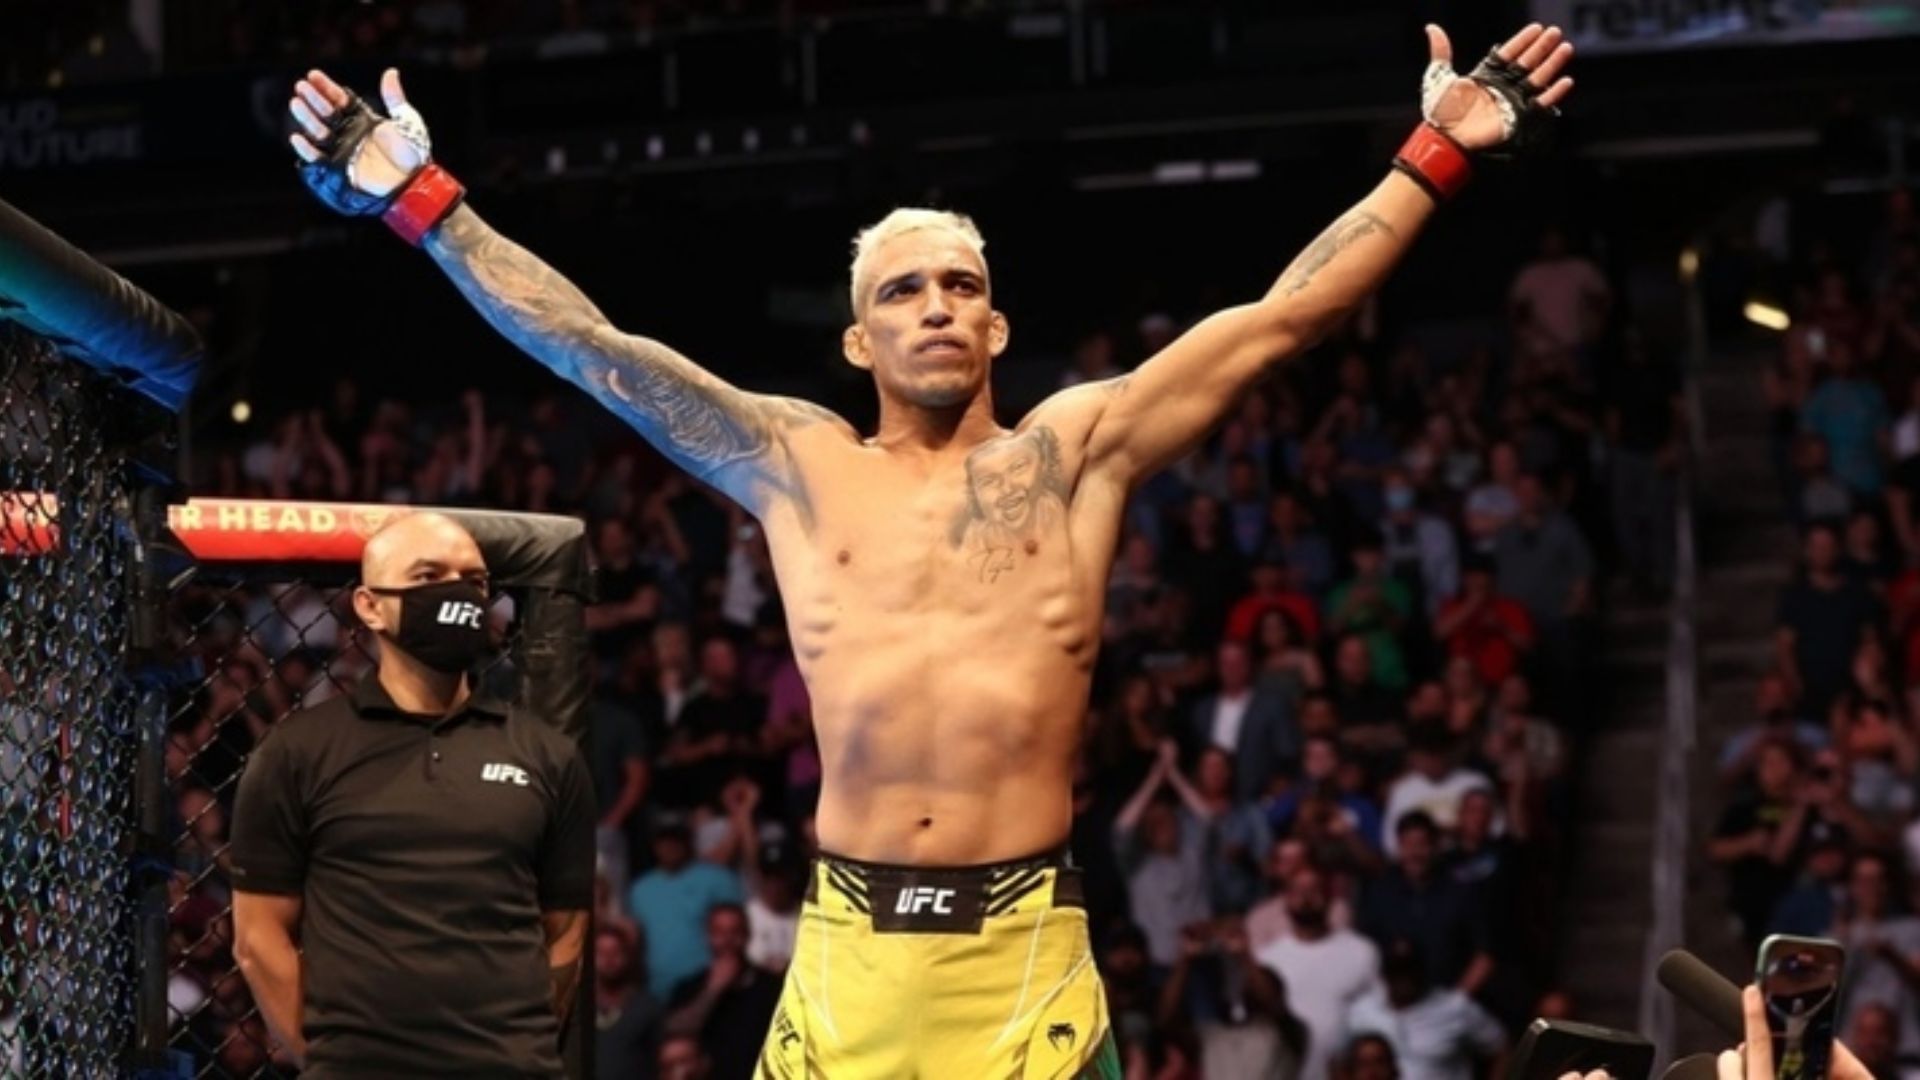 Kekayaan Bersih Bintang UFC Charles Oliveira